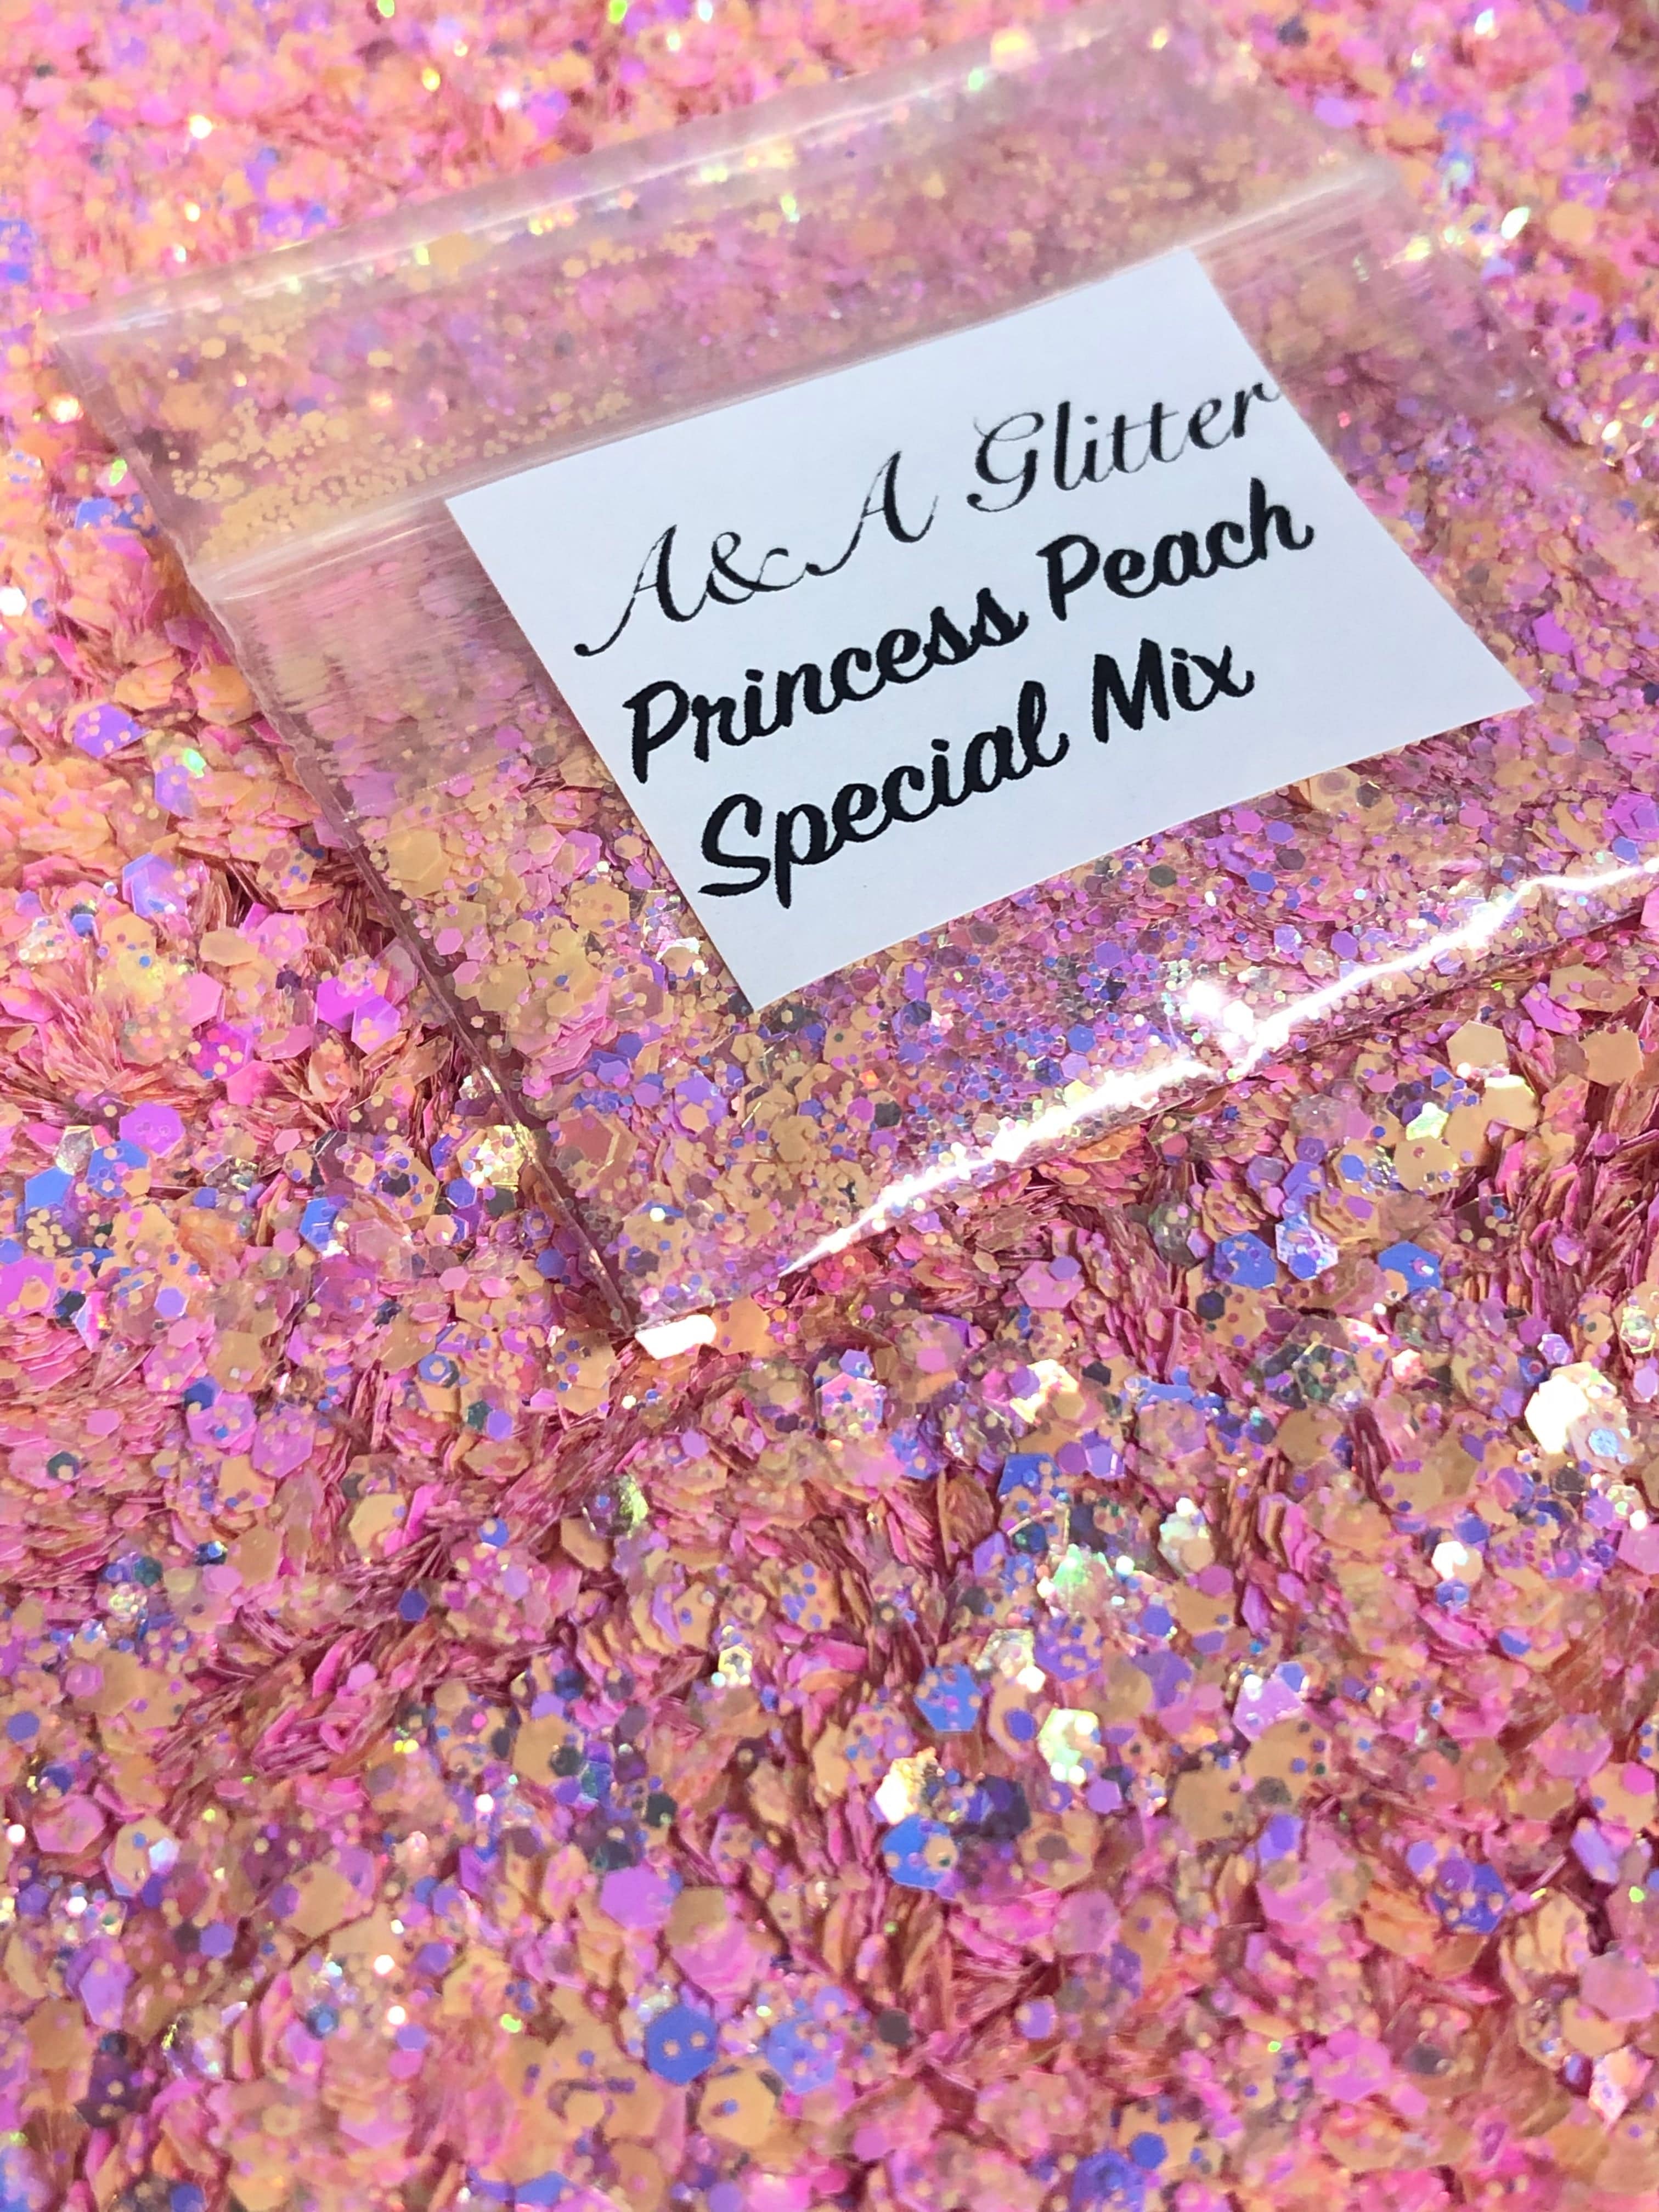 Princess Peach Special Mix